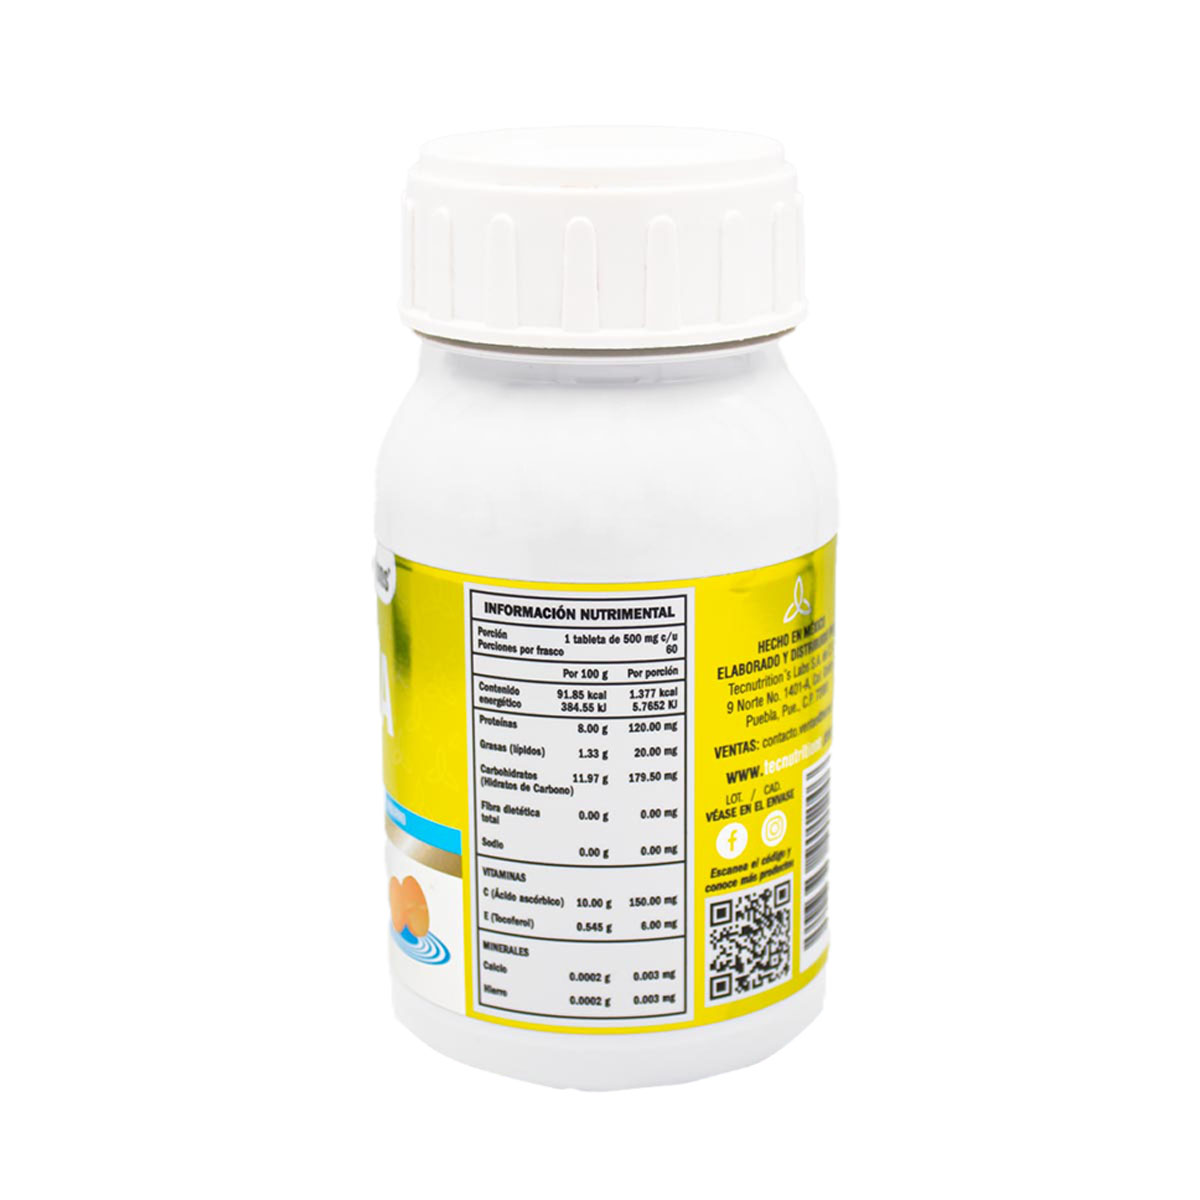 Suplemento alimenticio Lidya, 60 tabs, con sulfato ferroso, vitamina e, viburno, salud hormonal femenina